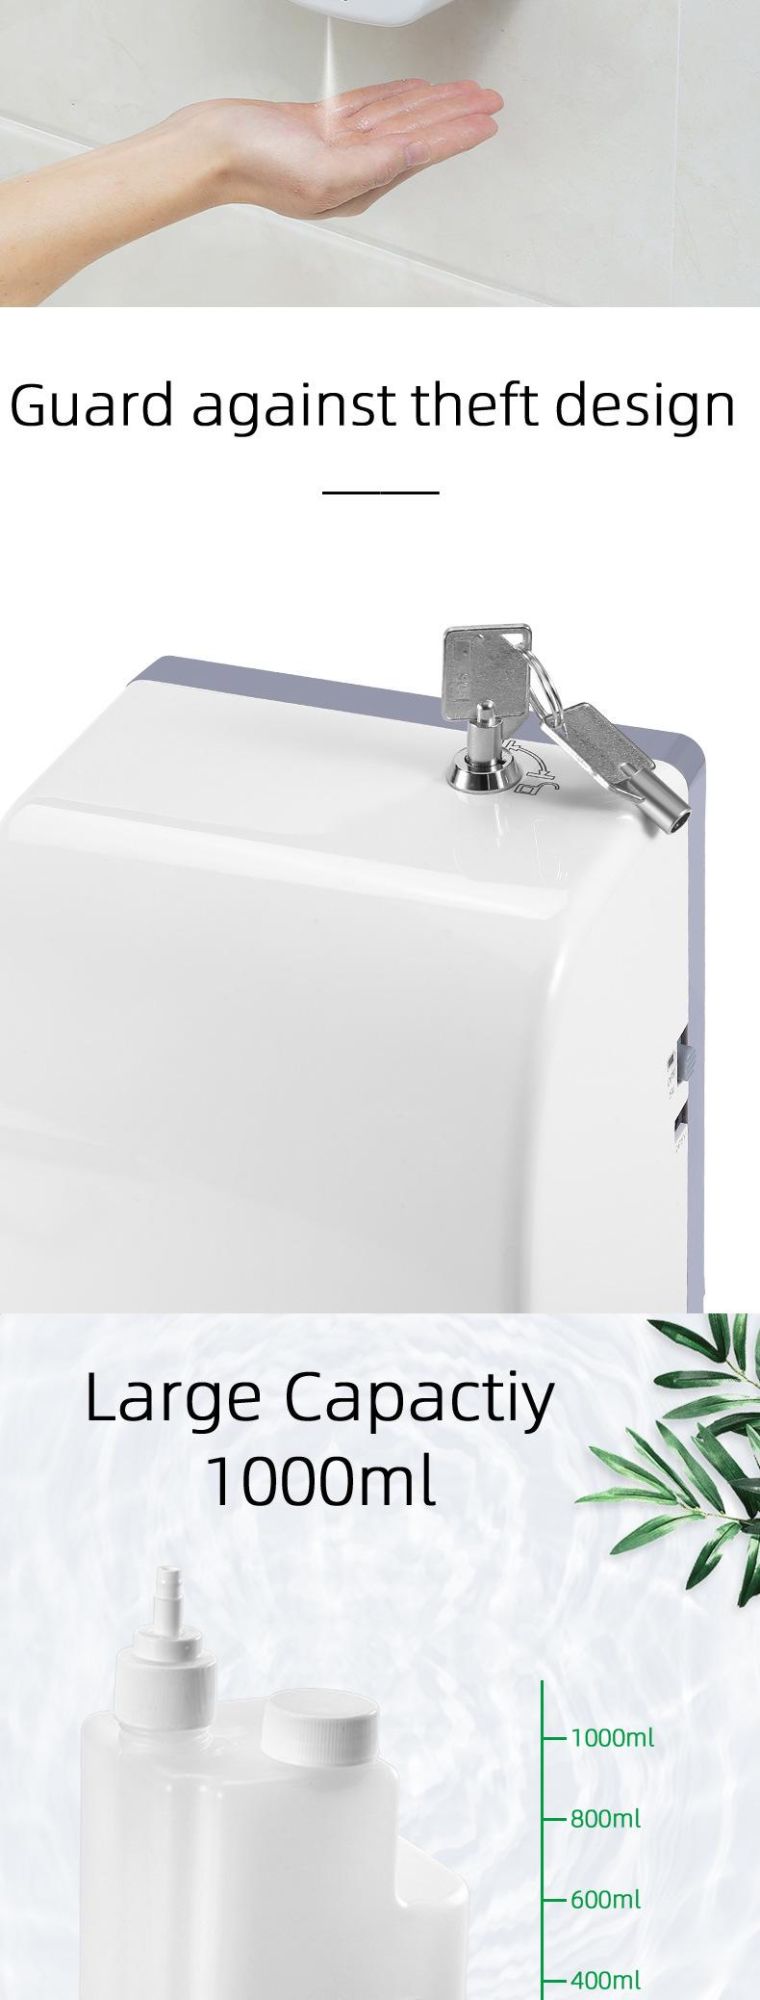 Custom Logo Sensor Dispenser Automatic Alcohol Touchless Hand Sanitizer Soap-Dispenser Spray Standing Dispenser Floor Stand Automatic Dispenser